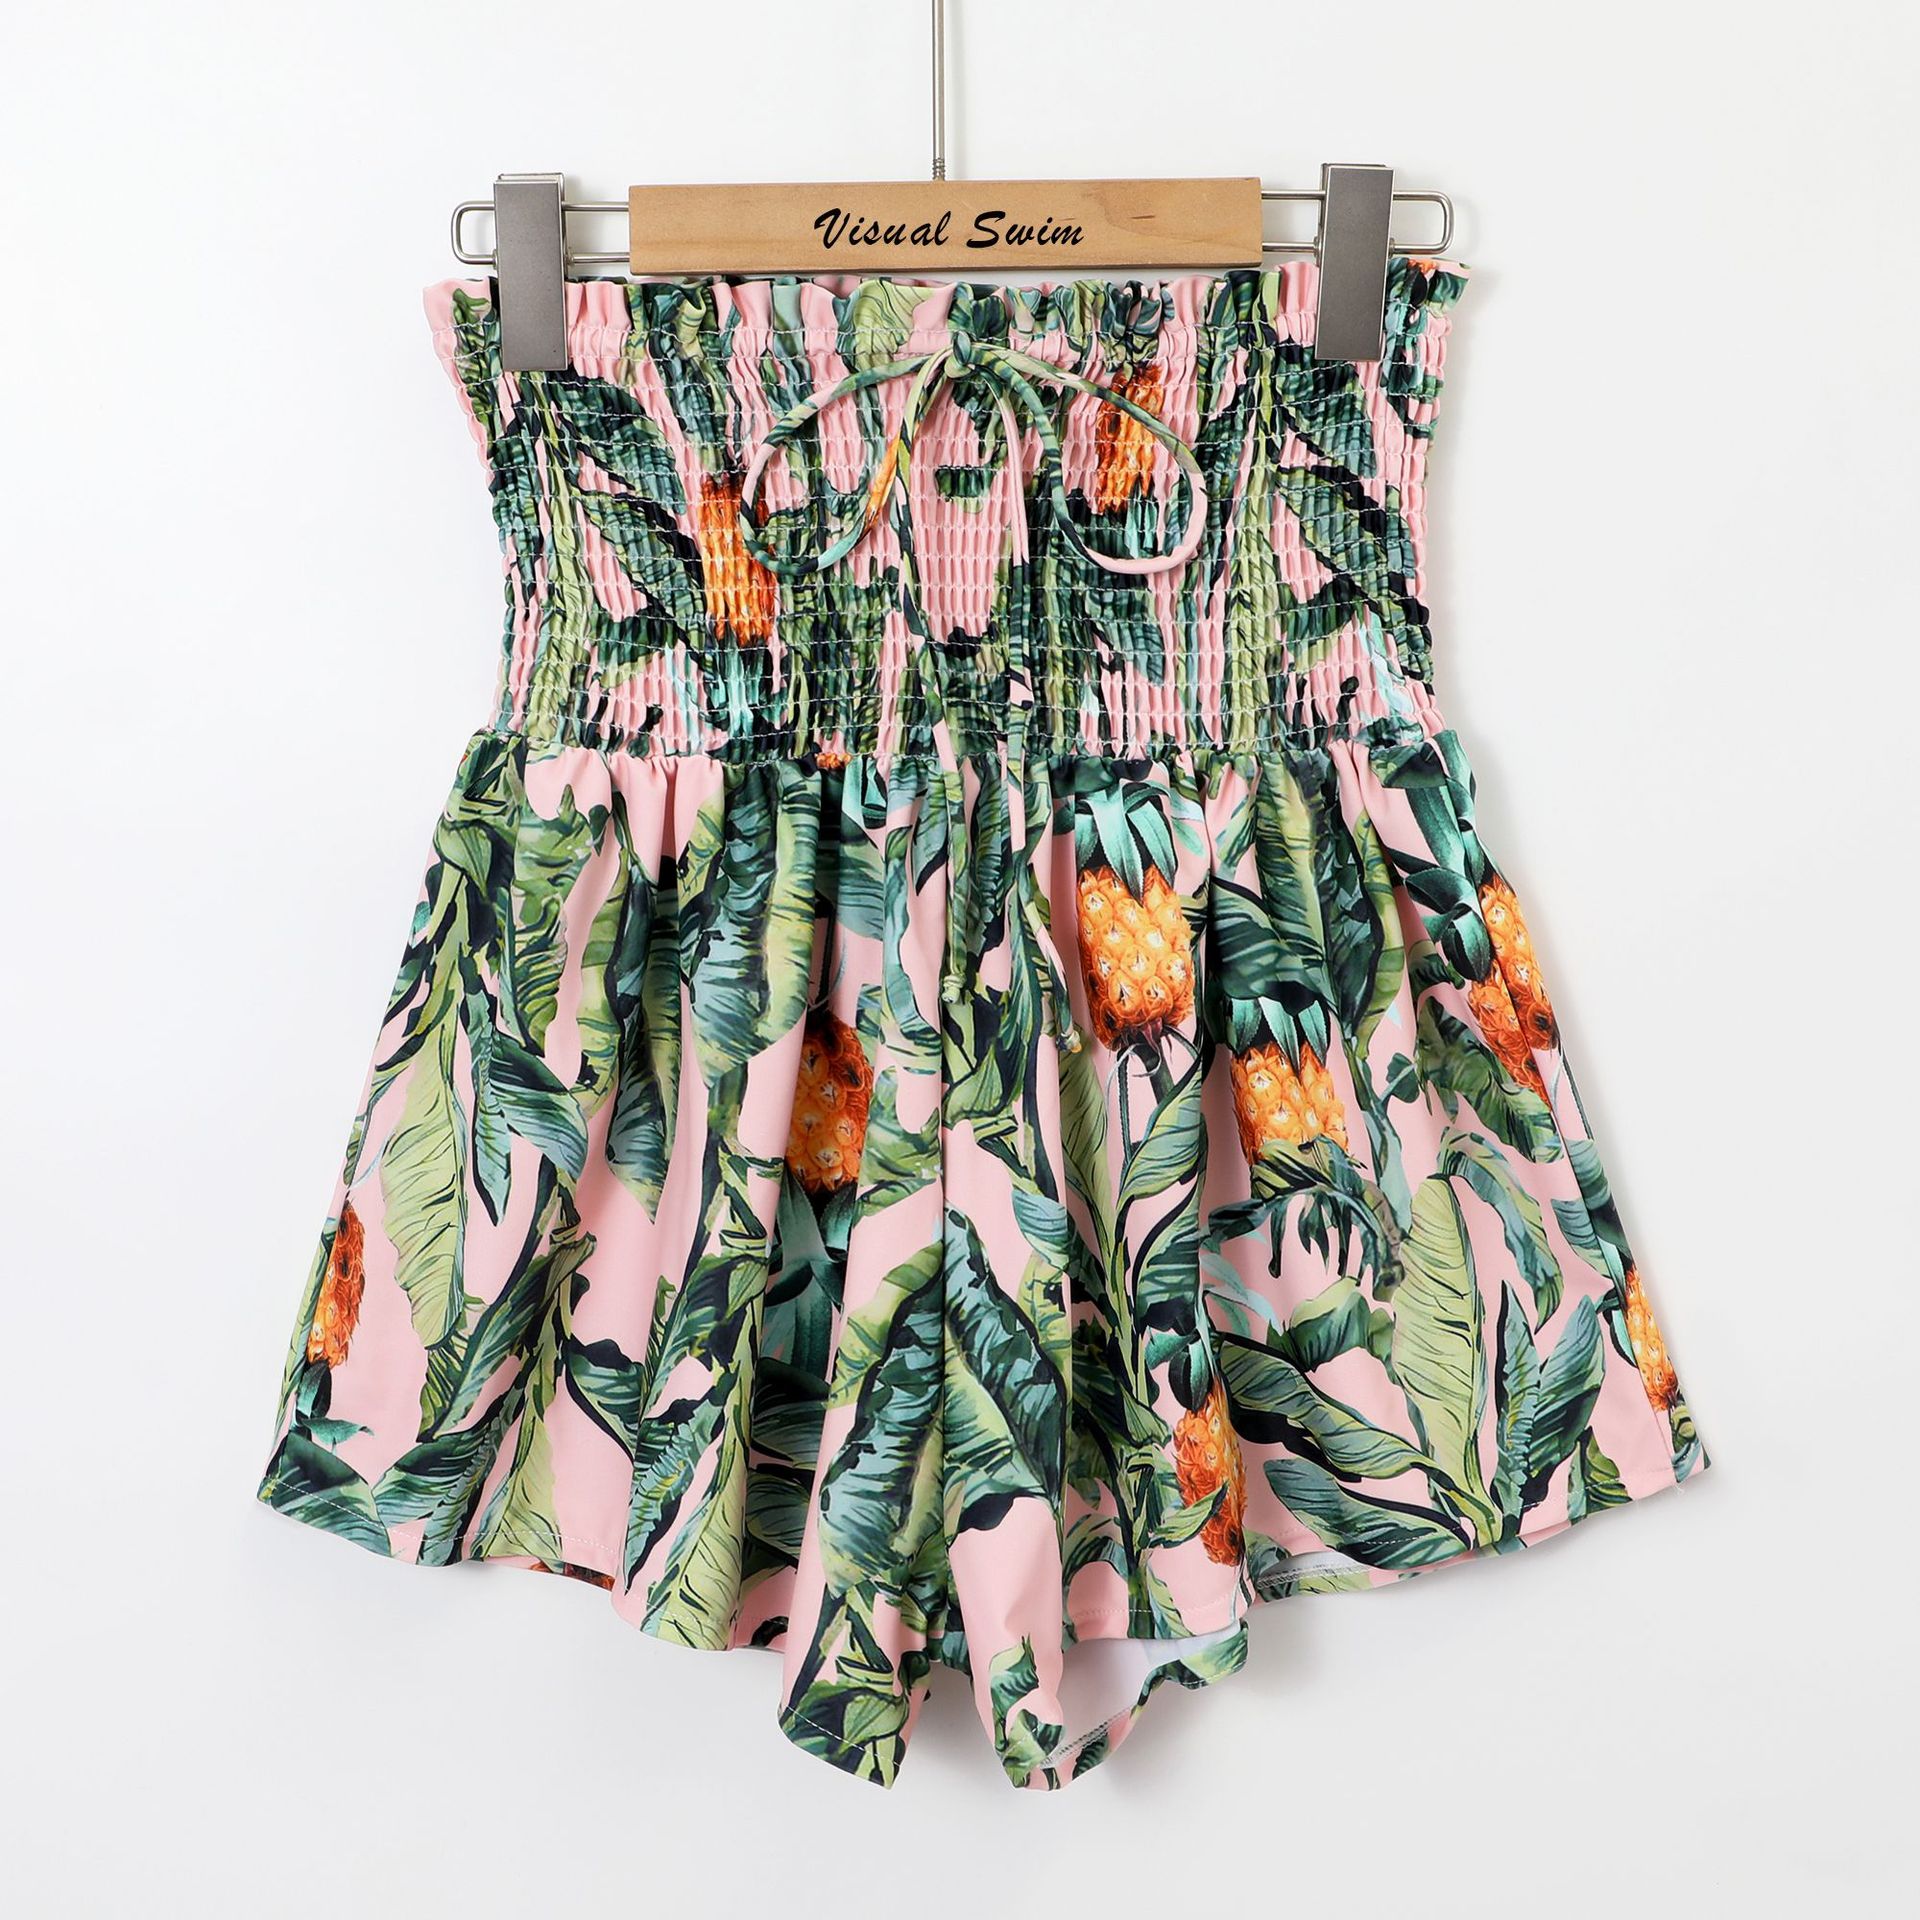 Pineapple skirt